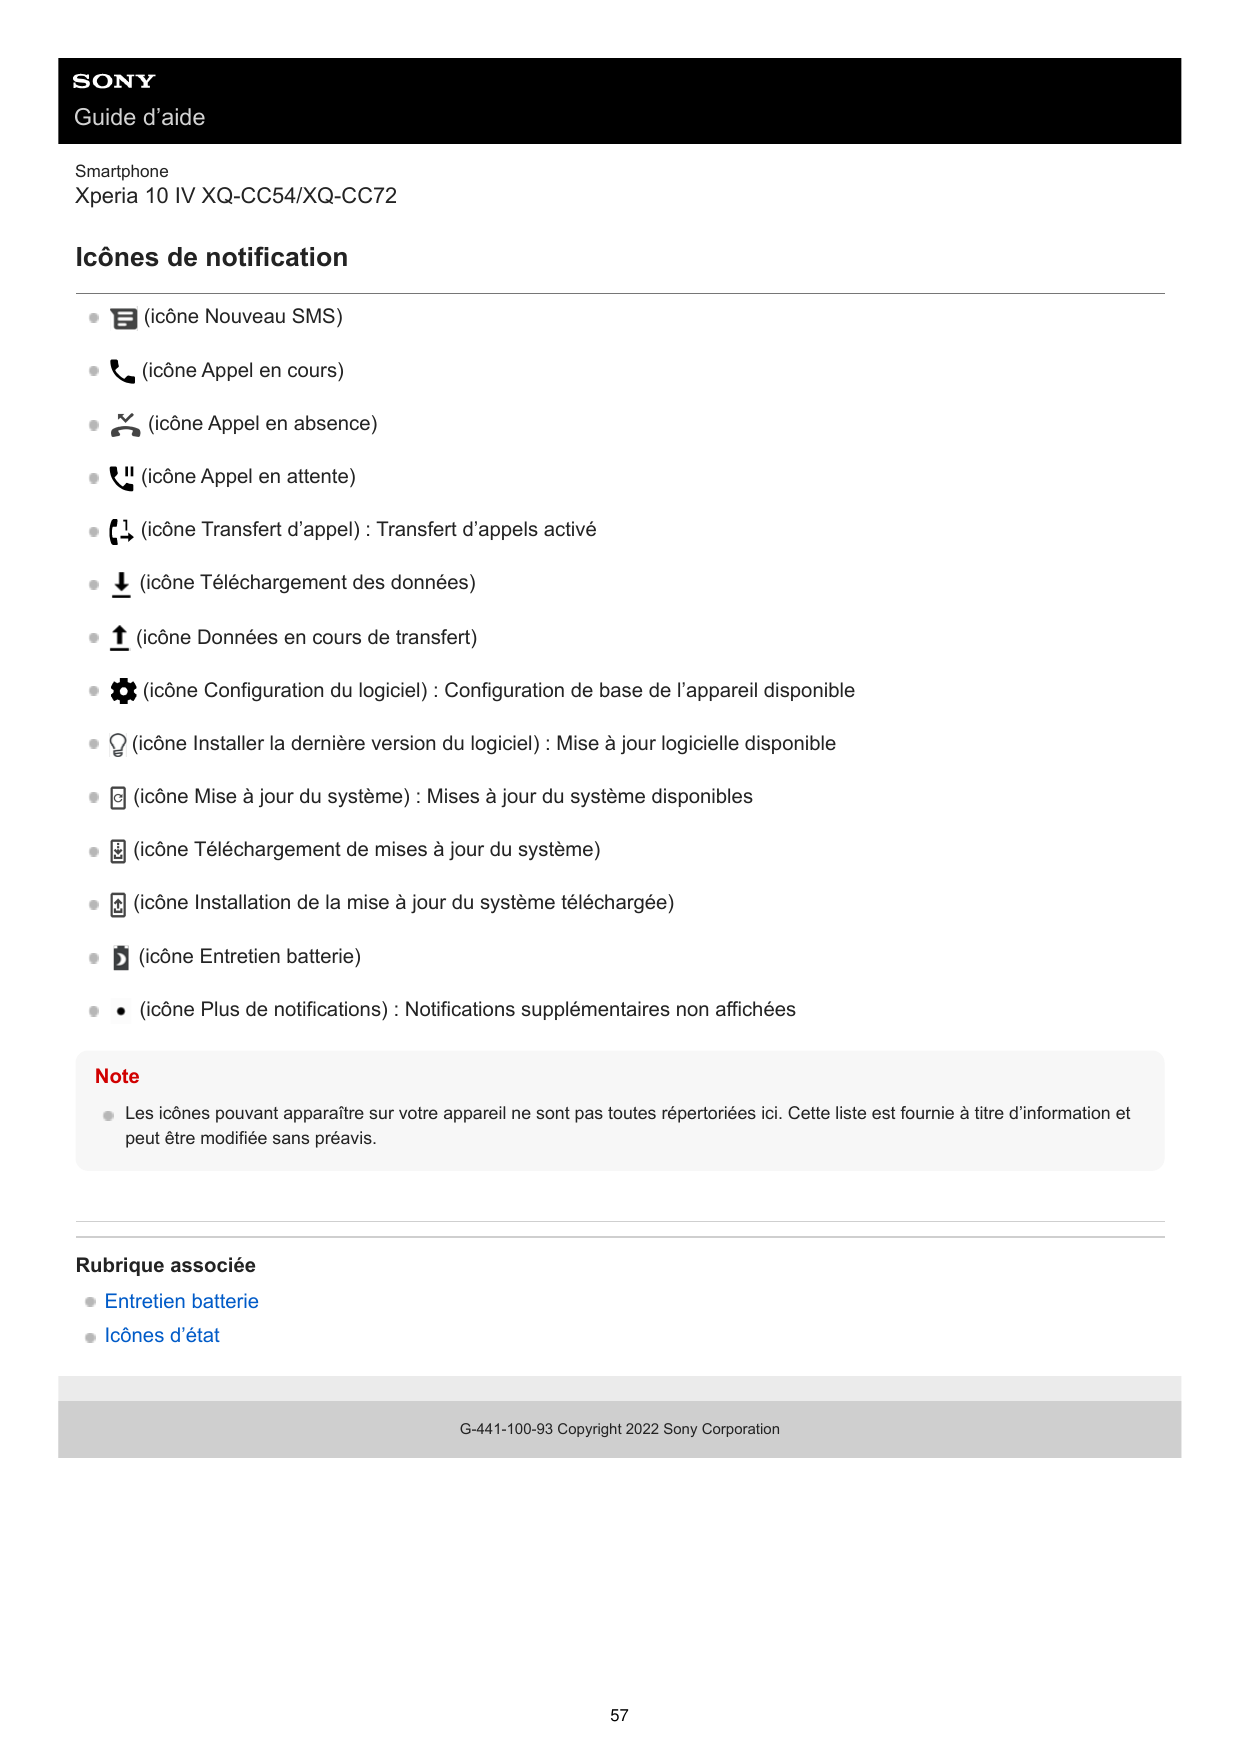 Guide d’aideSmartphoneXperia 10 IV XQ-CC54/XQ-CC72Icônes de notification(icône Nouveau SMS)(icône Appel en cours)(icône Appel en